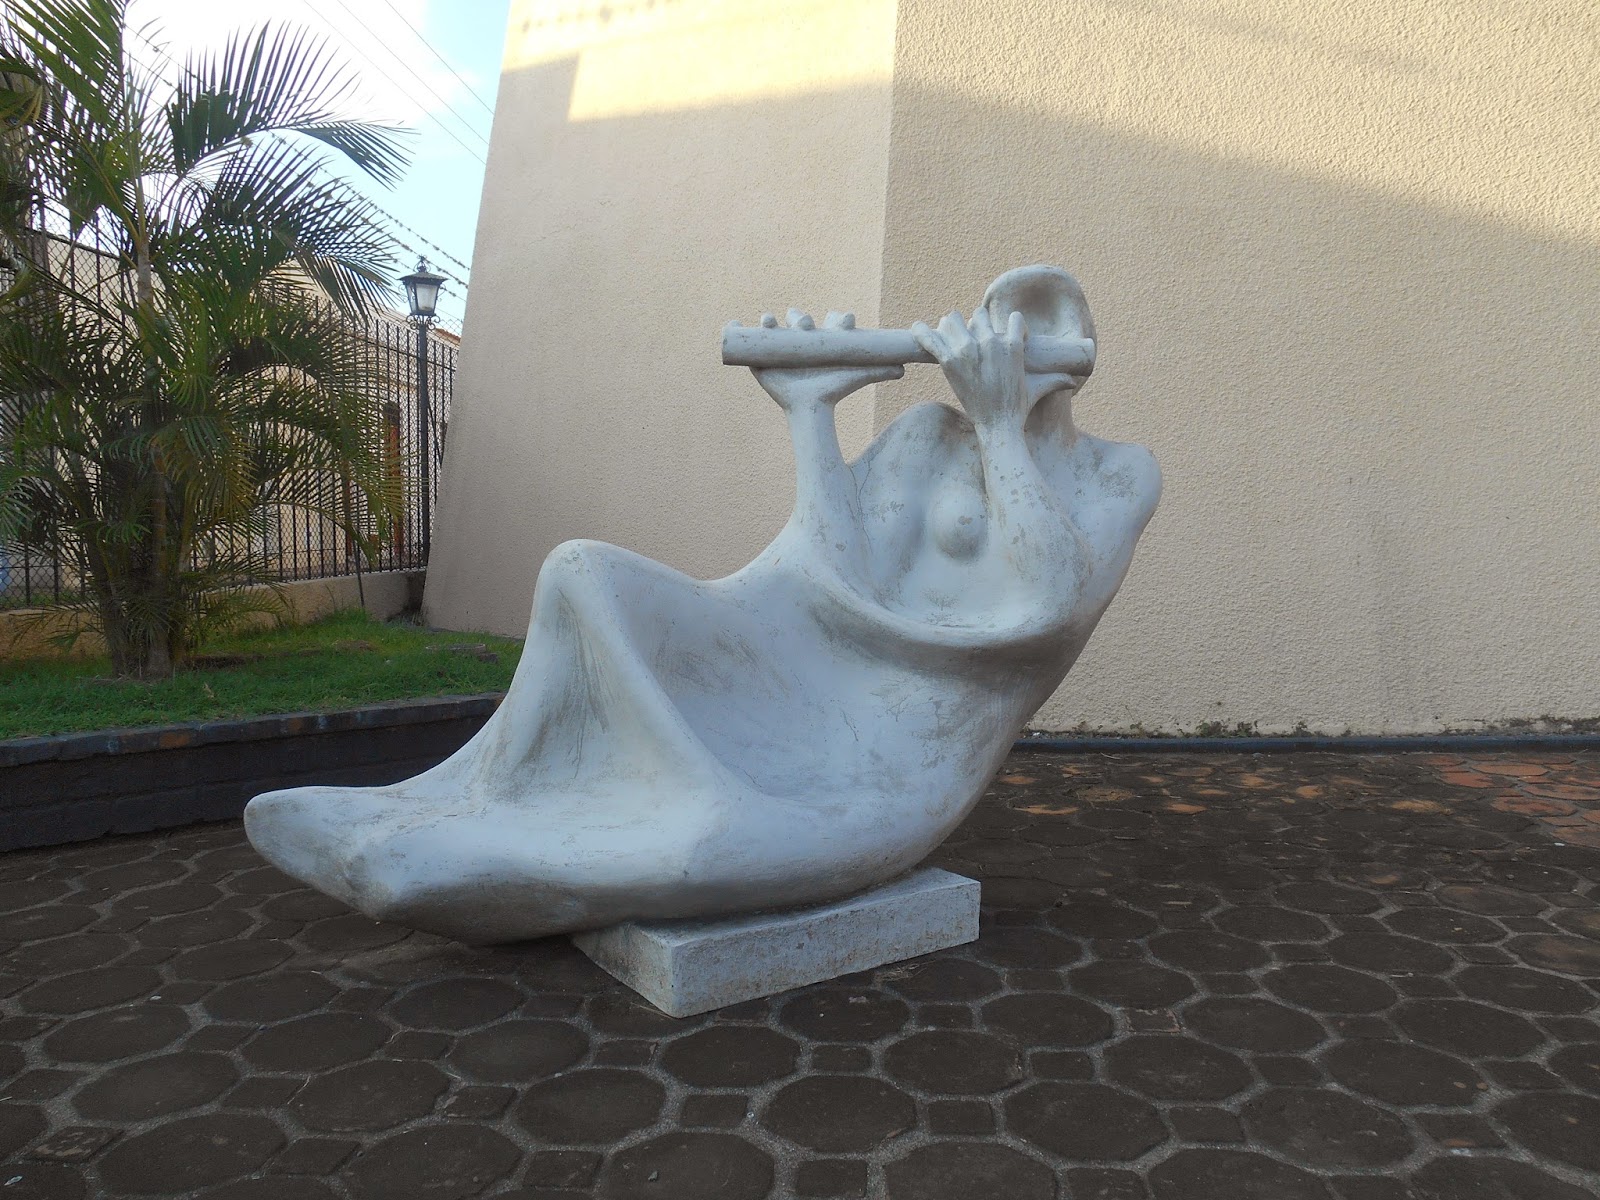 Una foto de la escultura "Flautista", de Rodrigo Arenas Betancourt, tomada por Leonardo Bernal Tobón